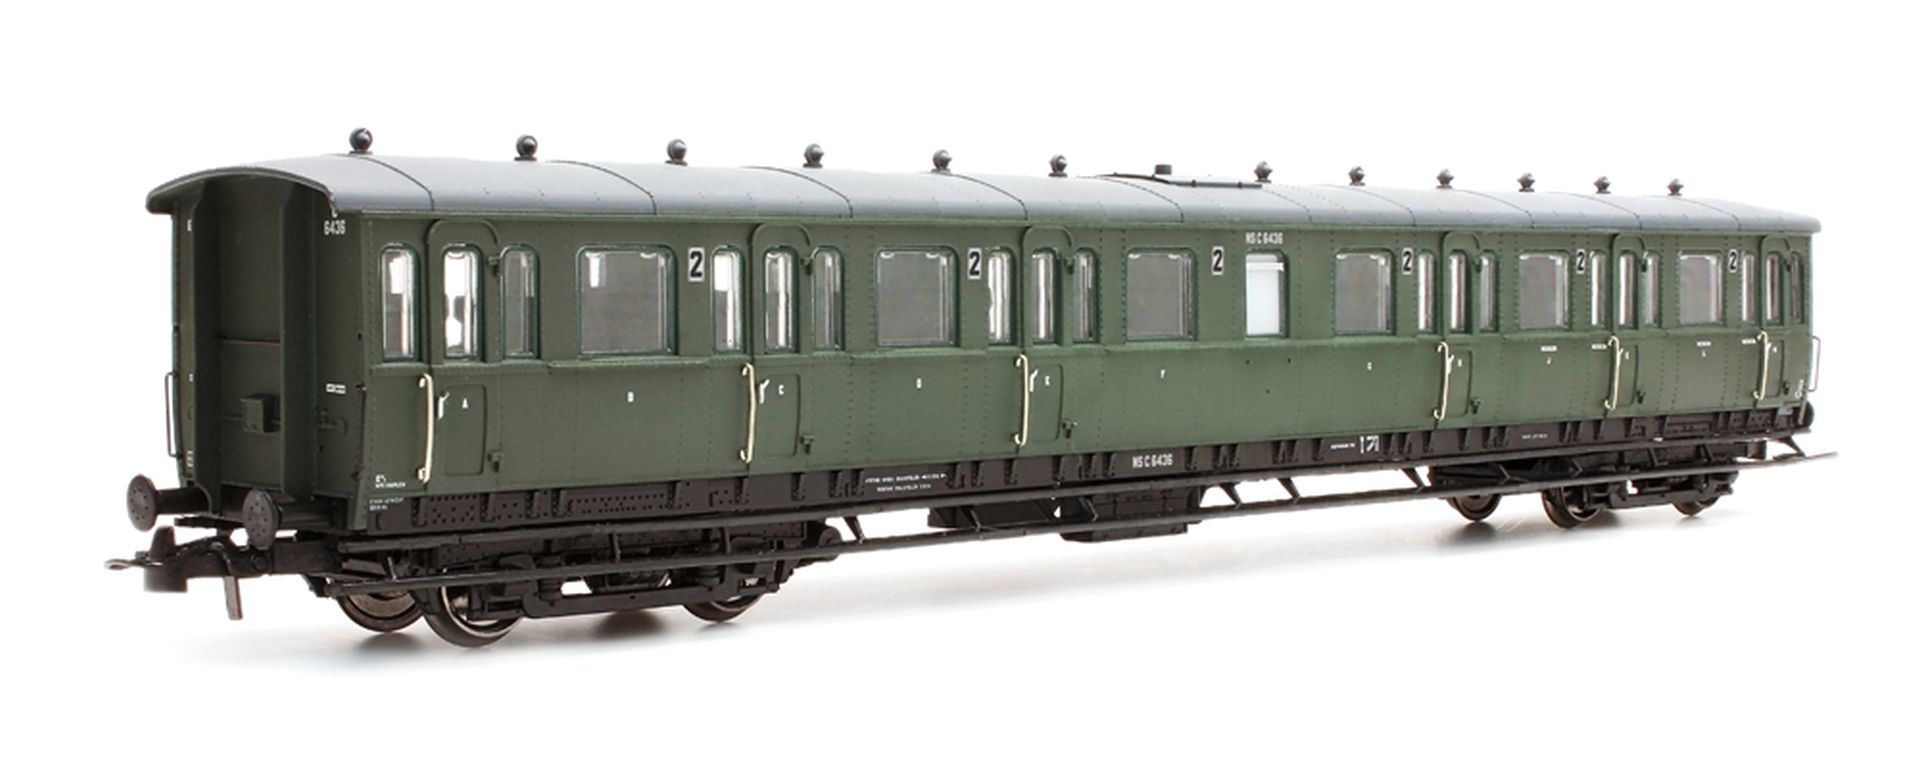 Artitec 20.254.07 - Personenwagen C12c C6444, 3. Klasse, NS, Ep.III